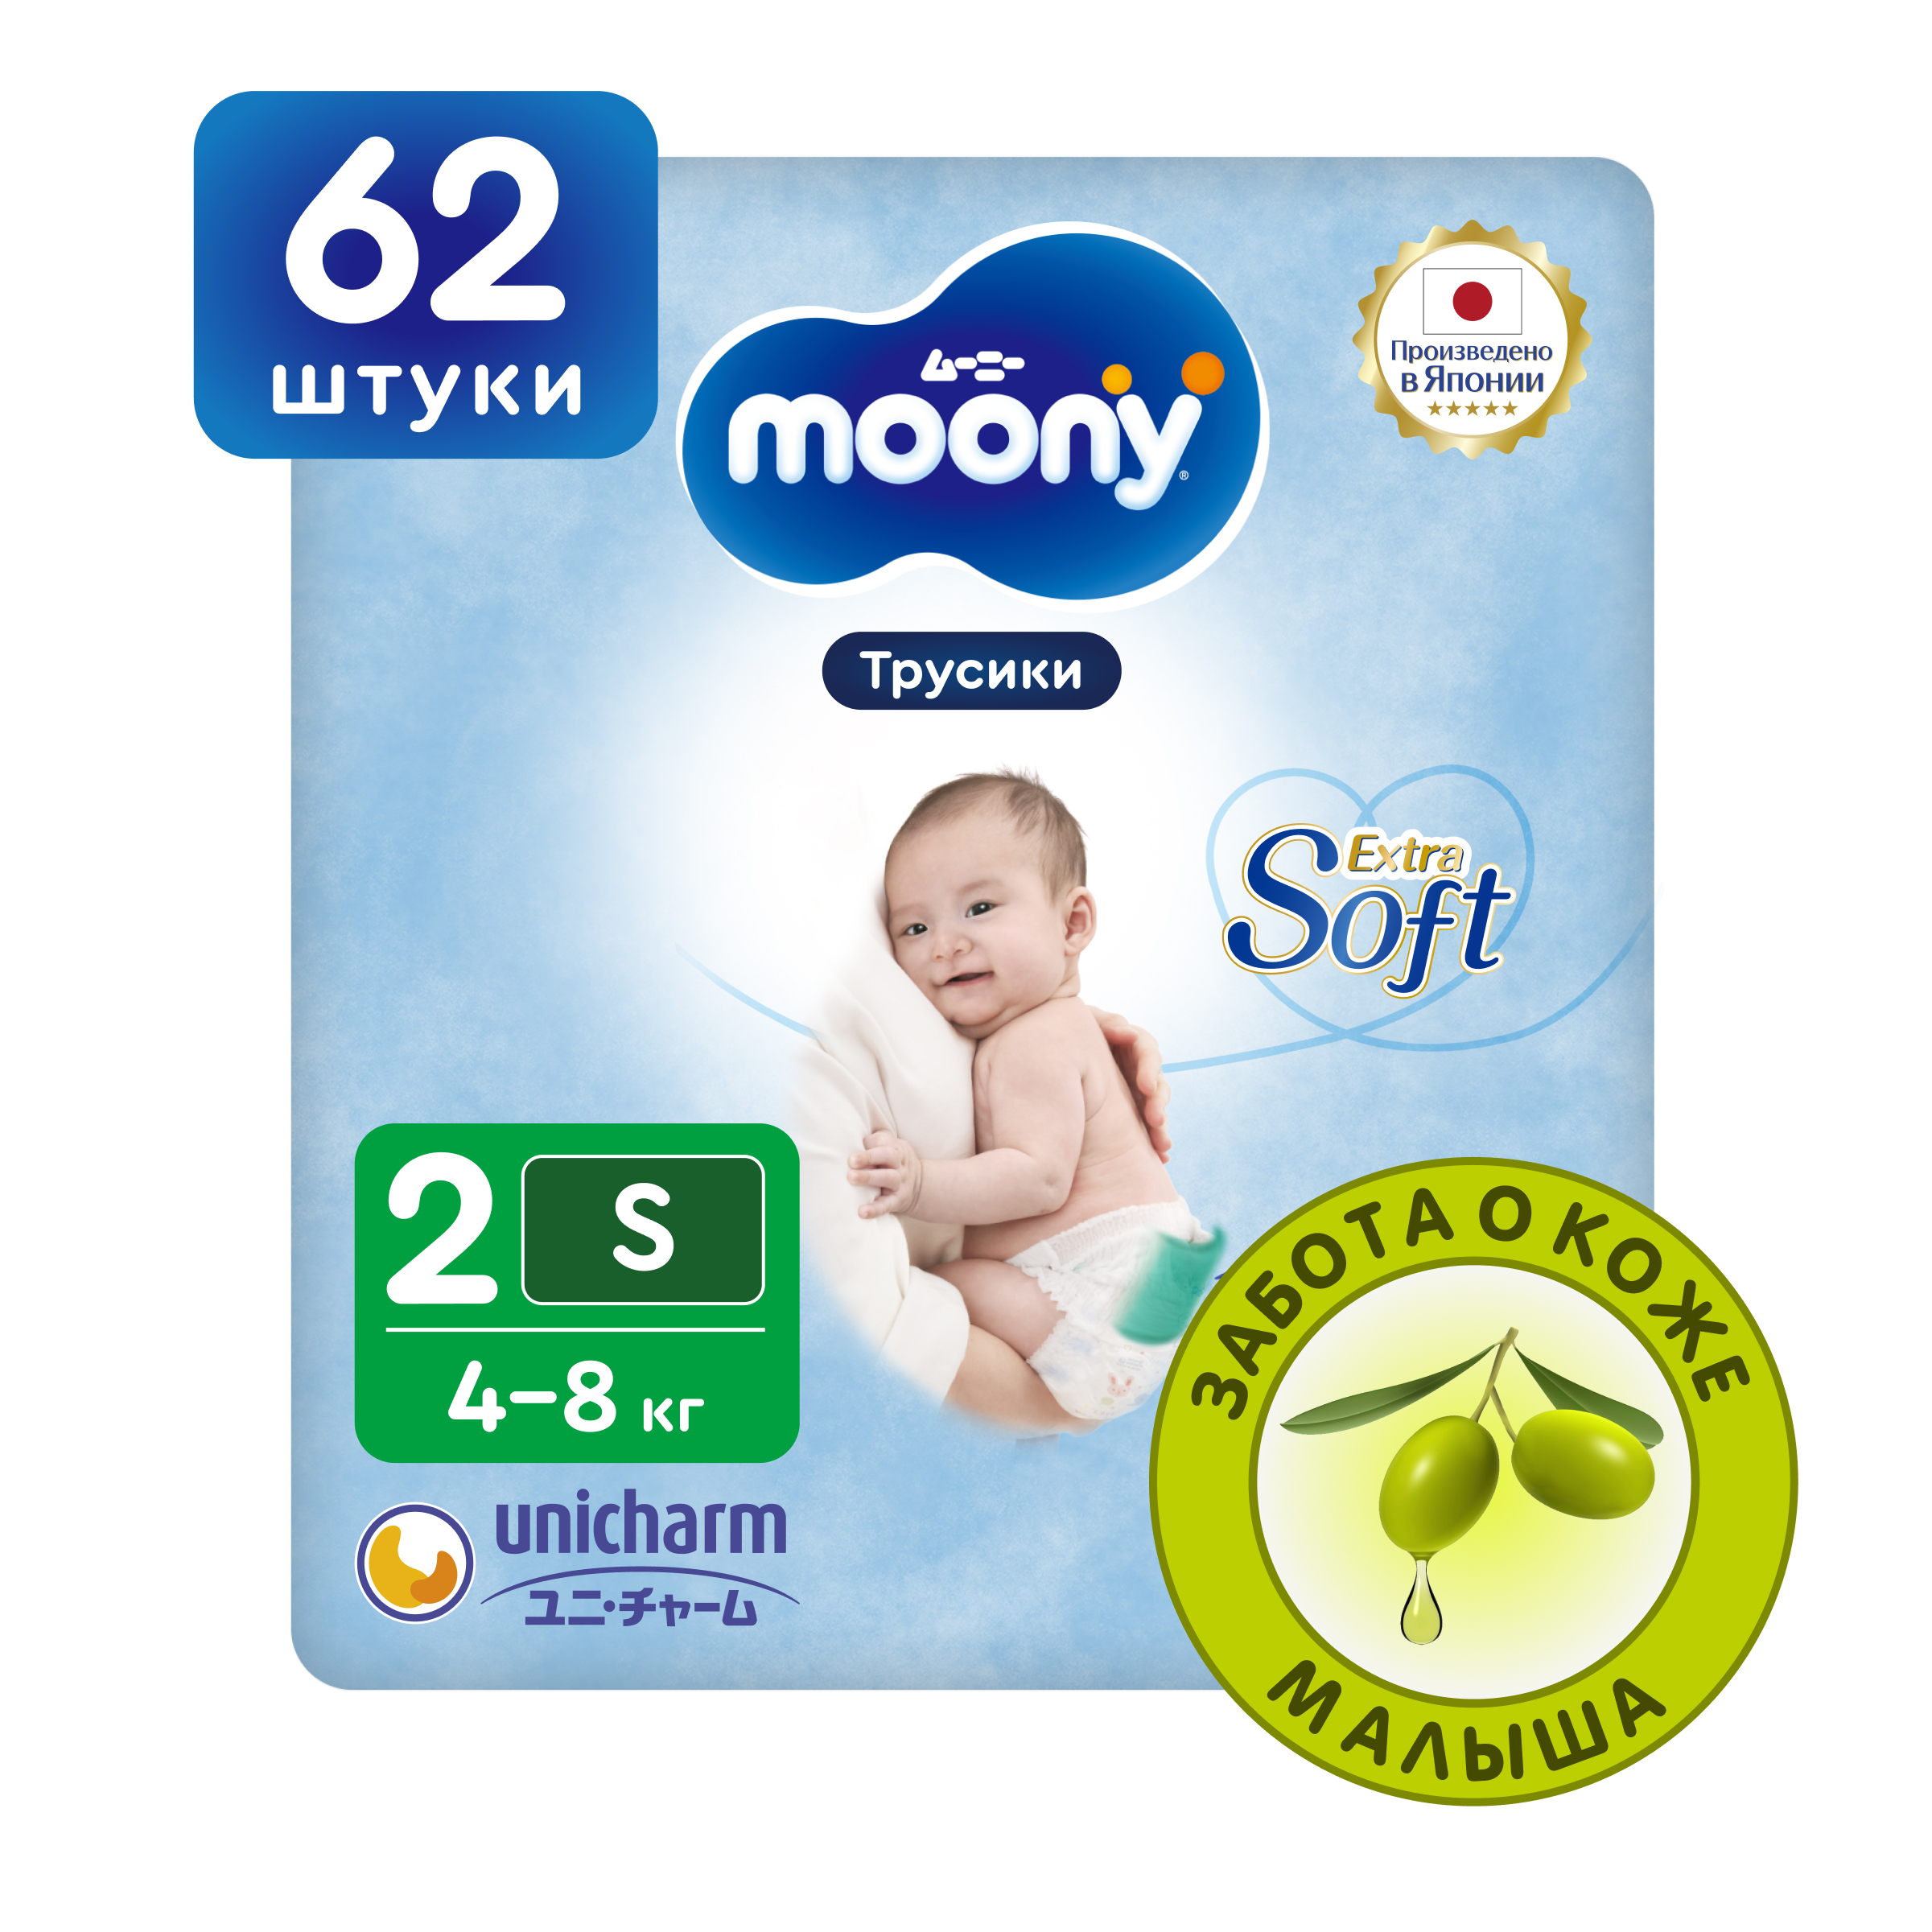 Японские подгузники трусики для новорожденных Moony Extra Soft 2 S, 4-8 кг, 62 шт